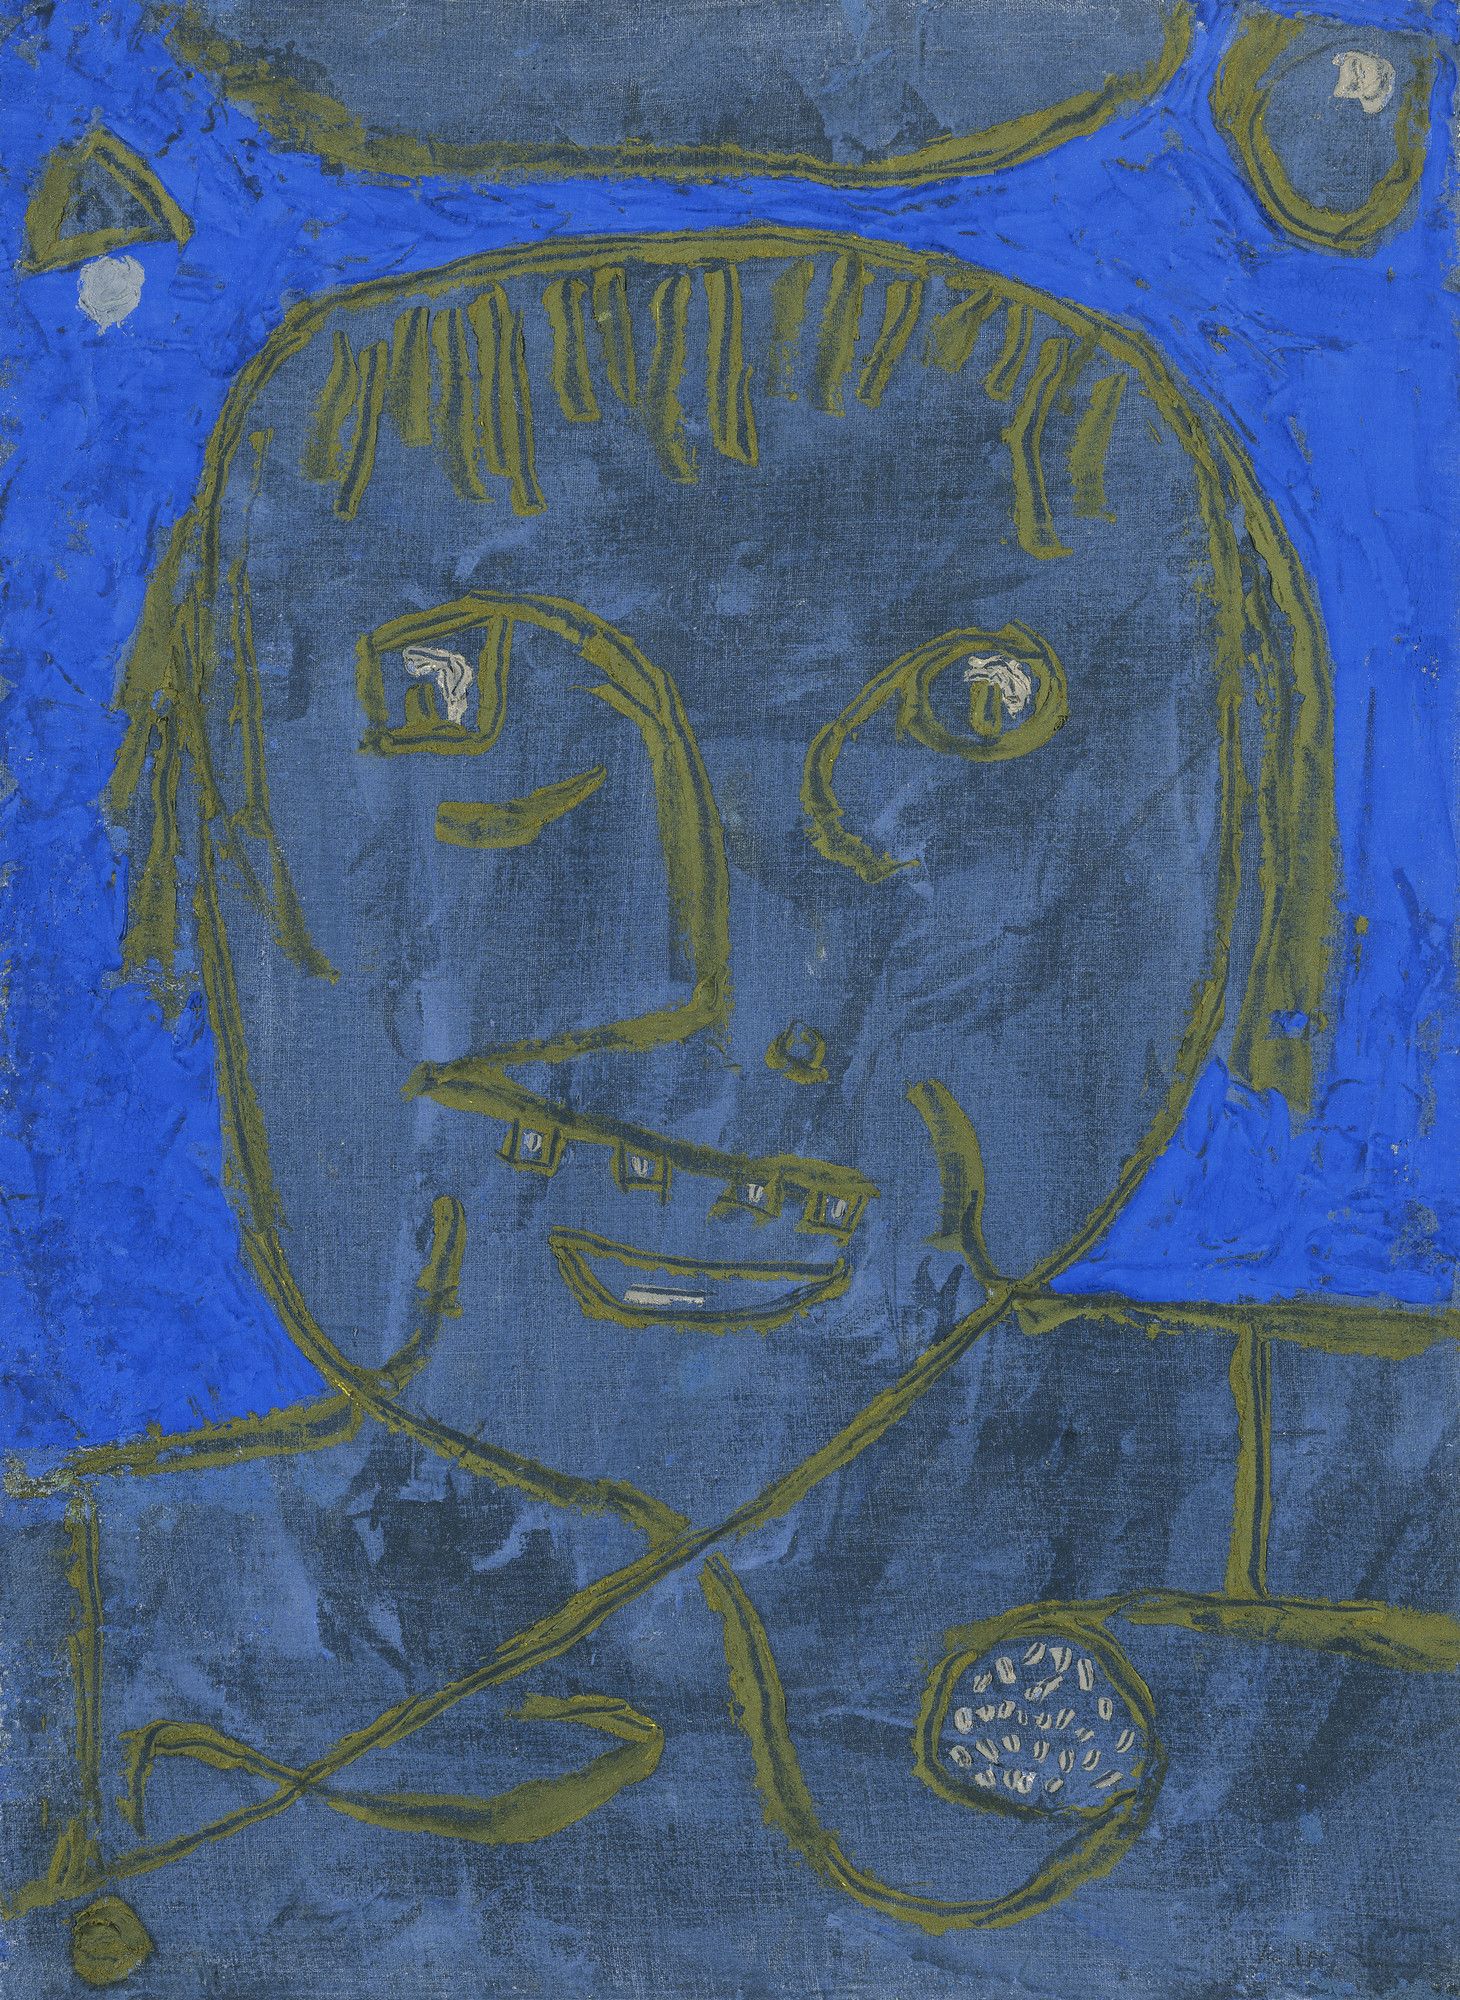 Jeune homme à la veille - Paul Klee